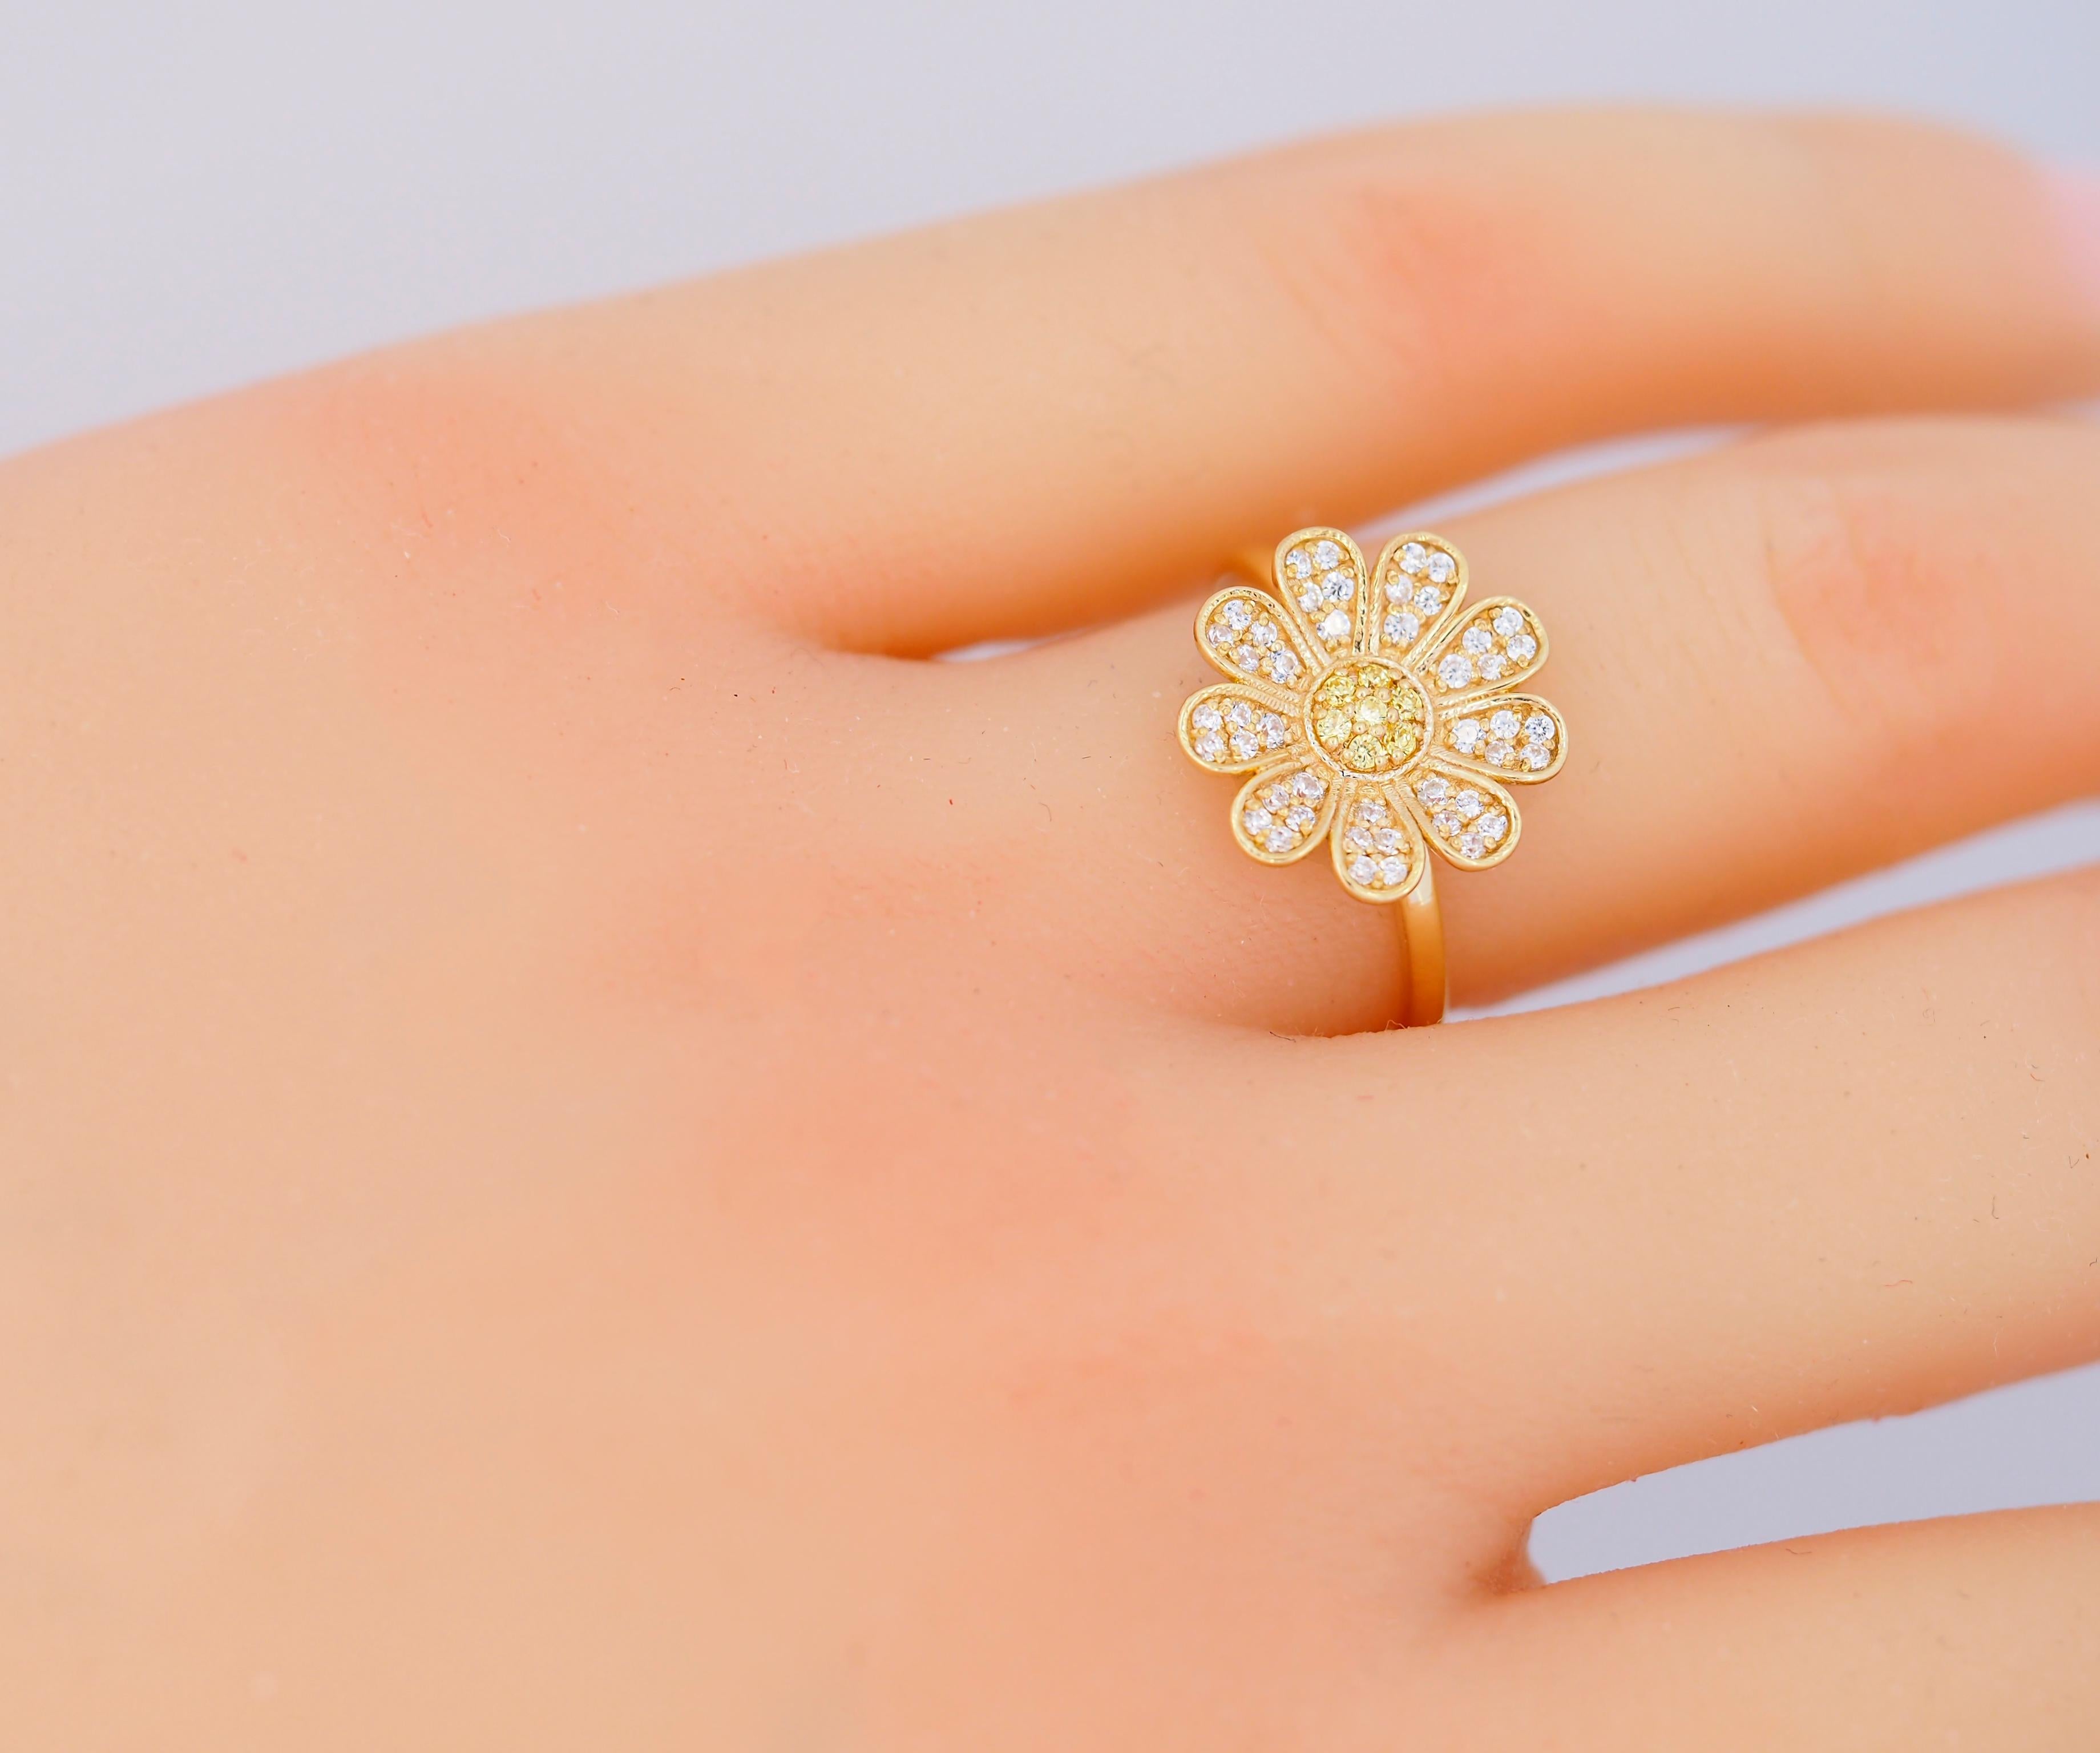 For Sale:  Daisy flower 14k gold ring.  5